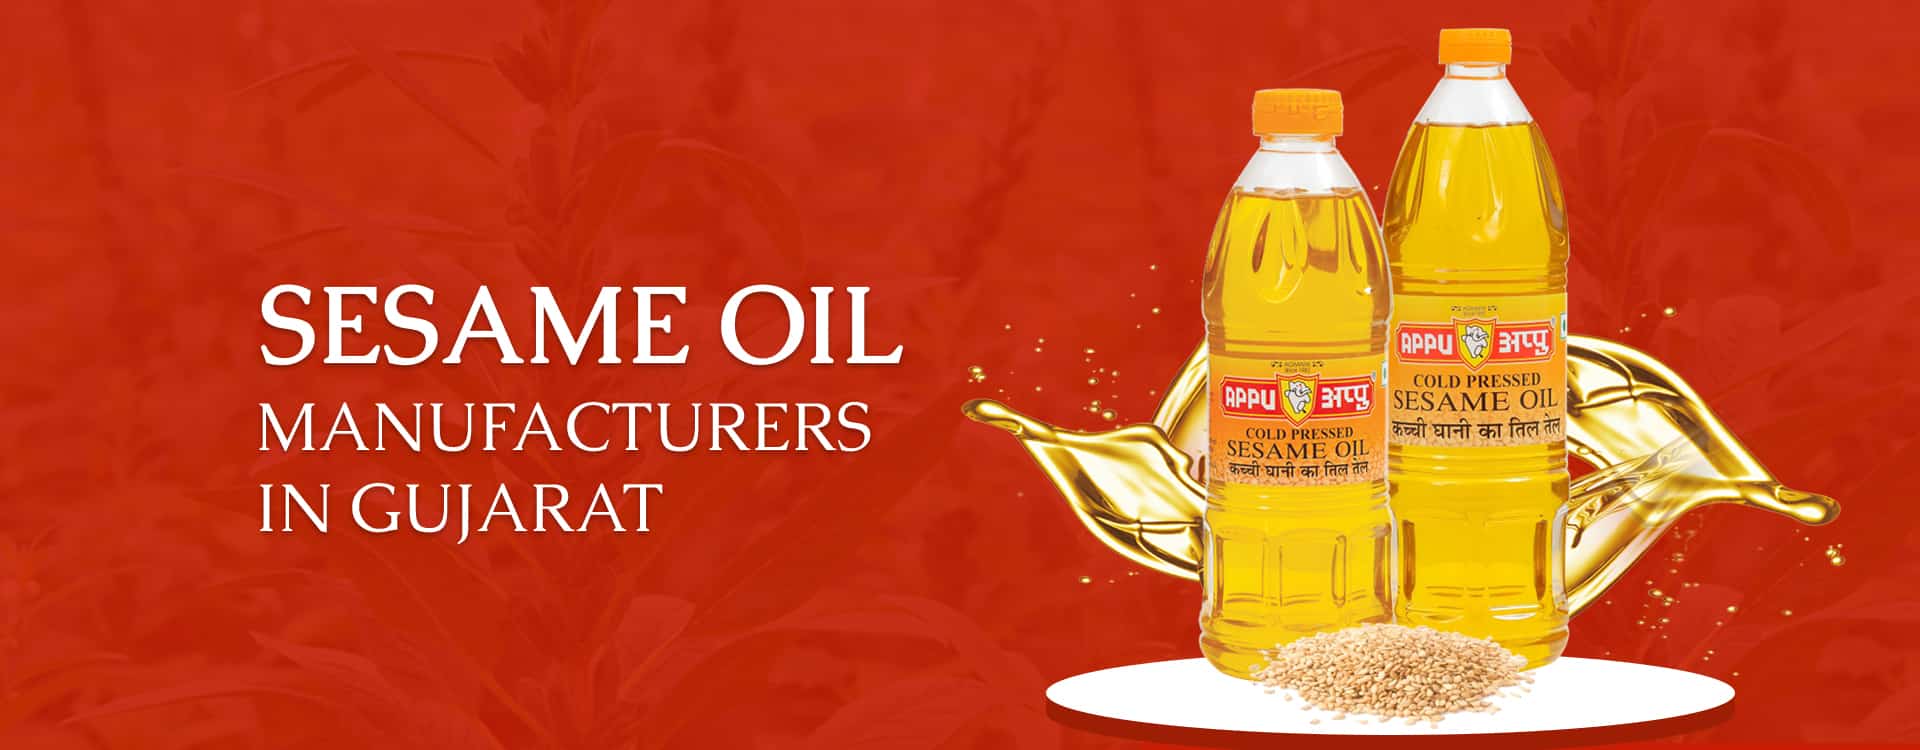 Sesame Oil Manufacturers in Gujarat